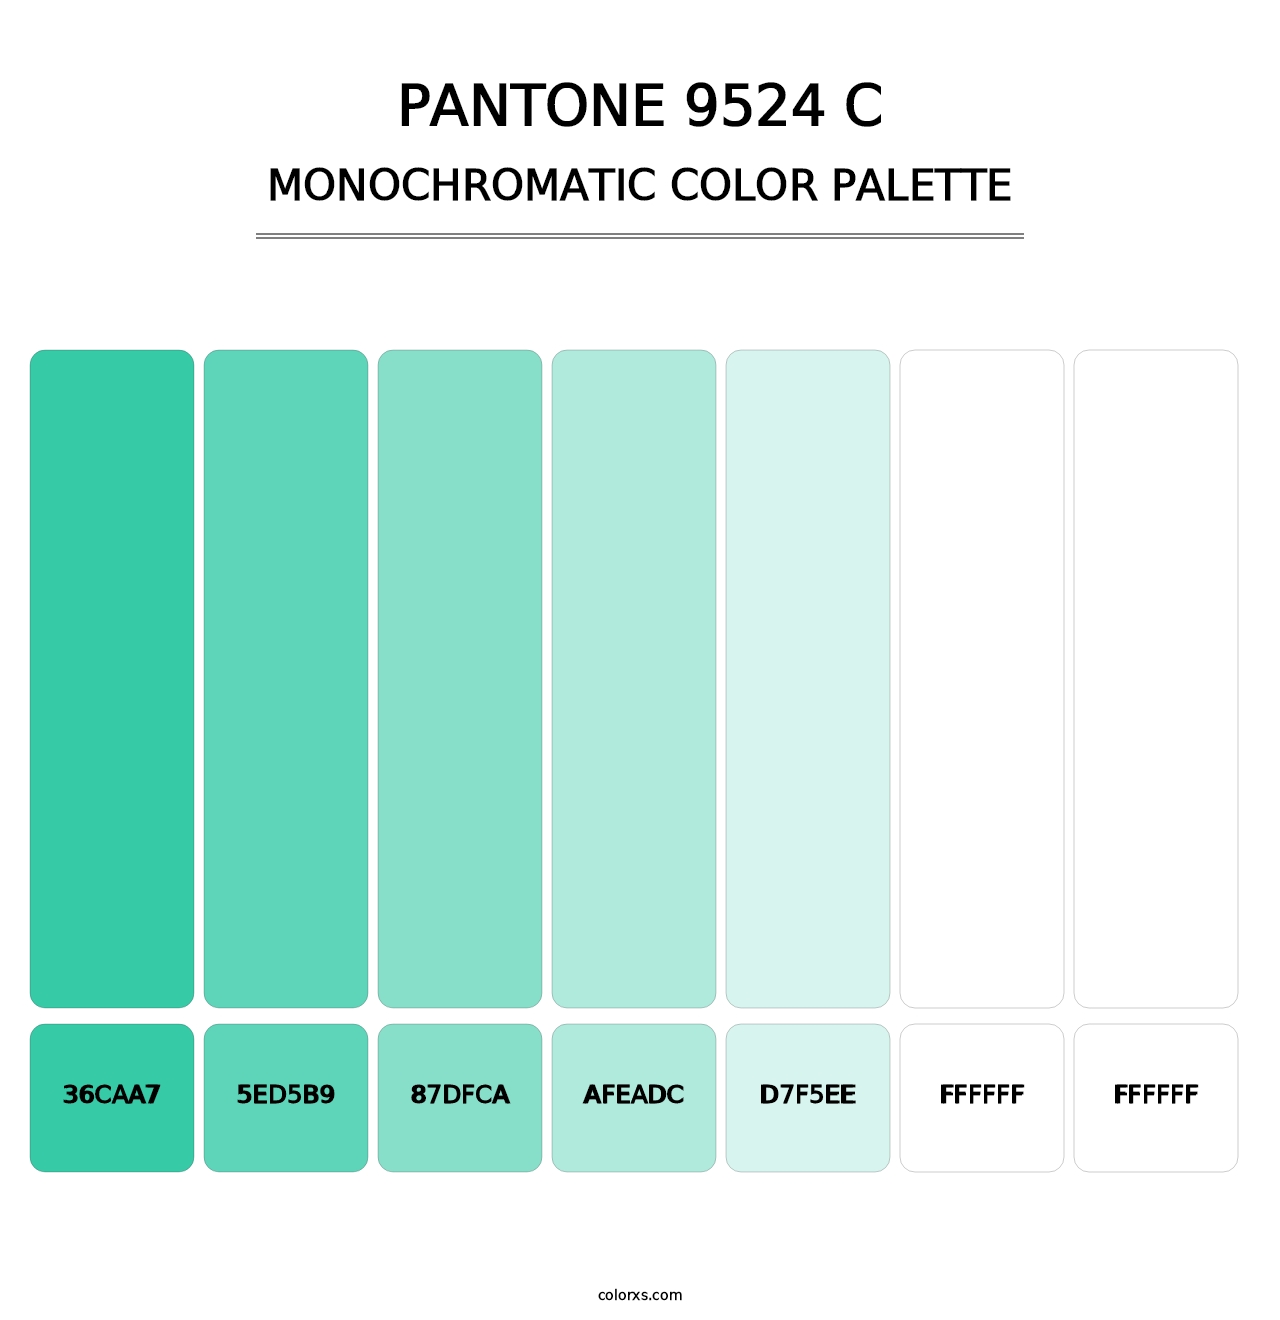 PANTONE 9524 C - Monochromatic Color Palette